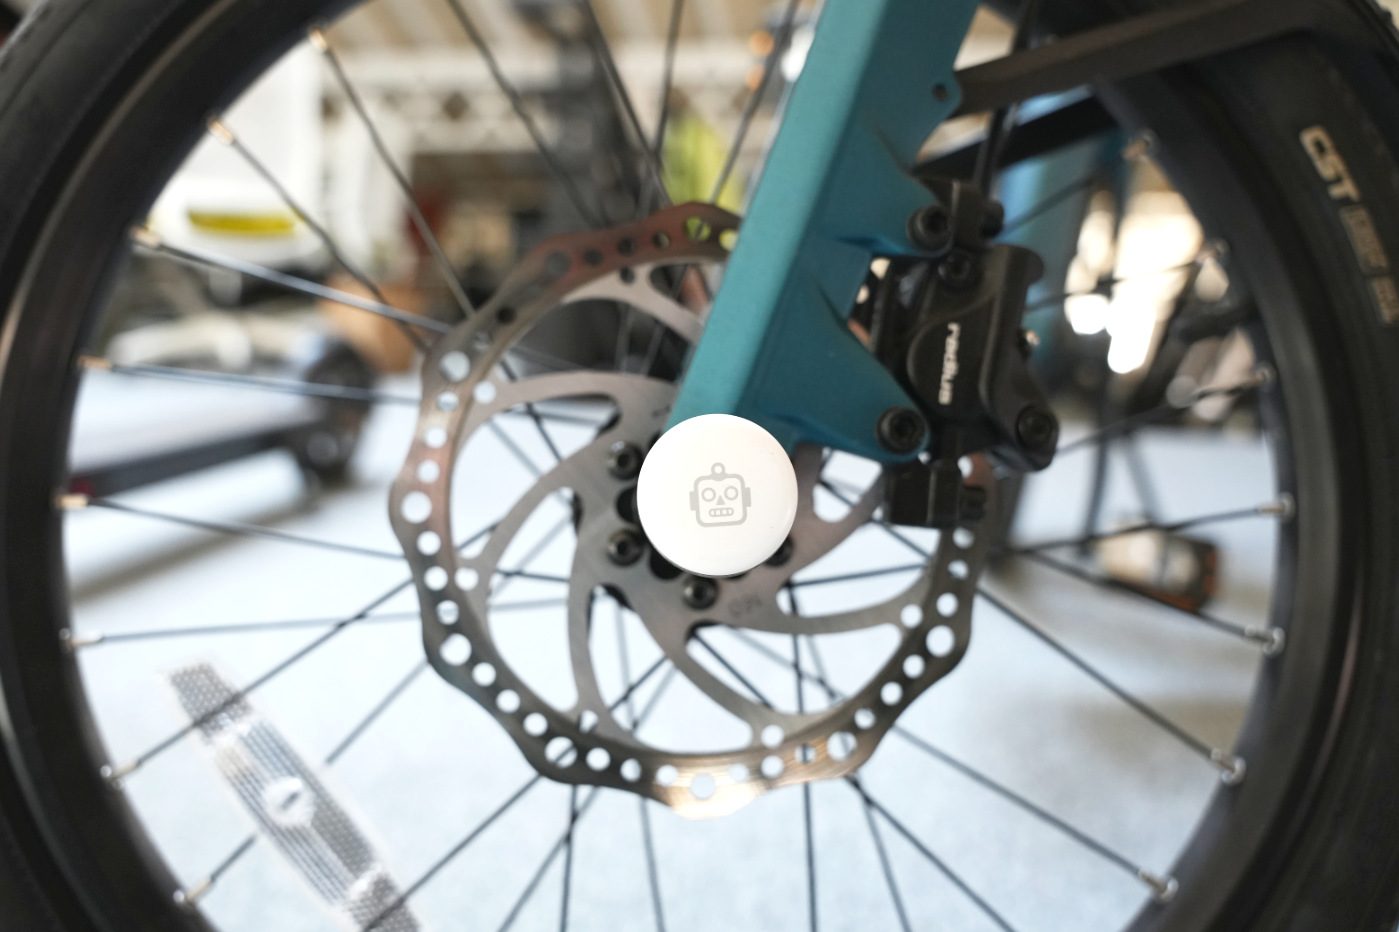 Vol de vélo : le AirTag est-il l'accessoire ultime pour retrouver